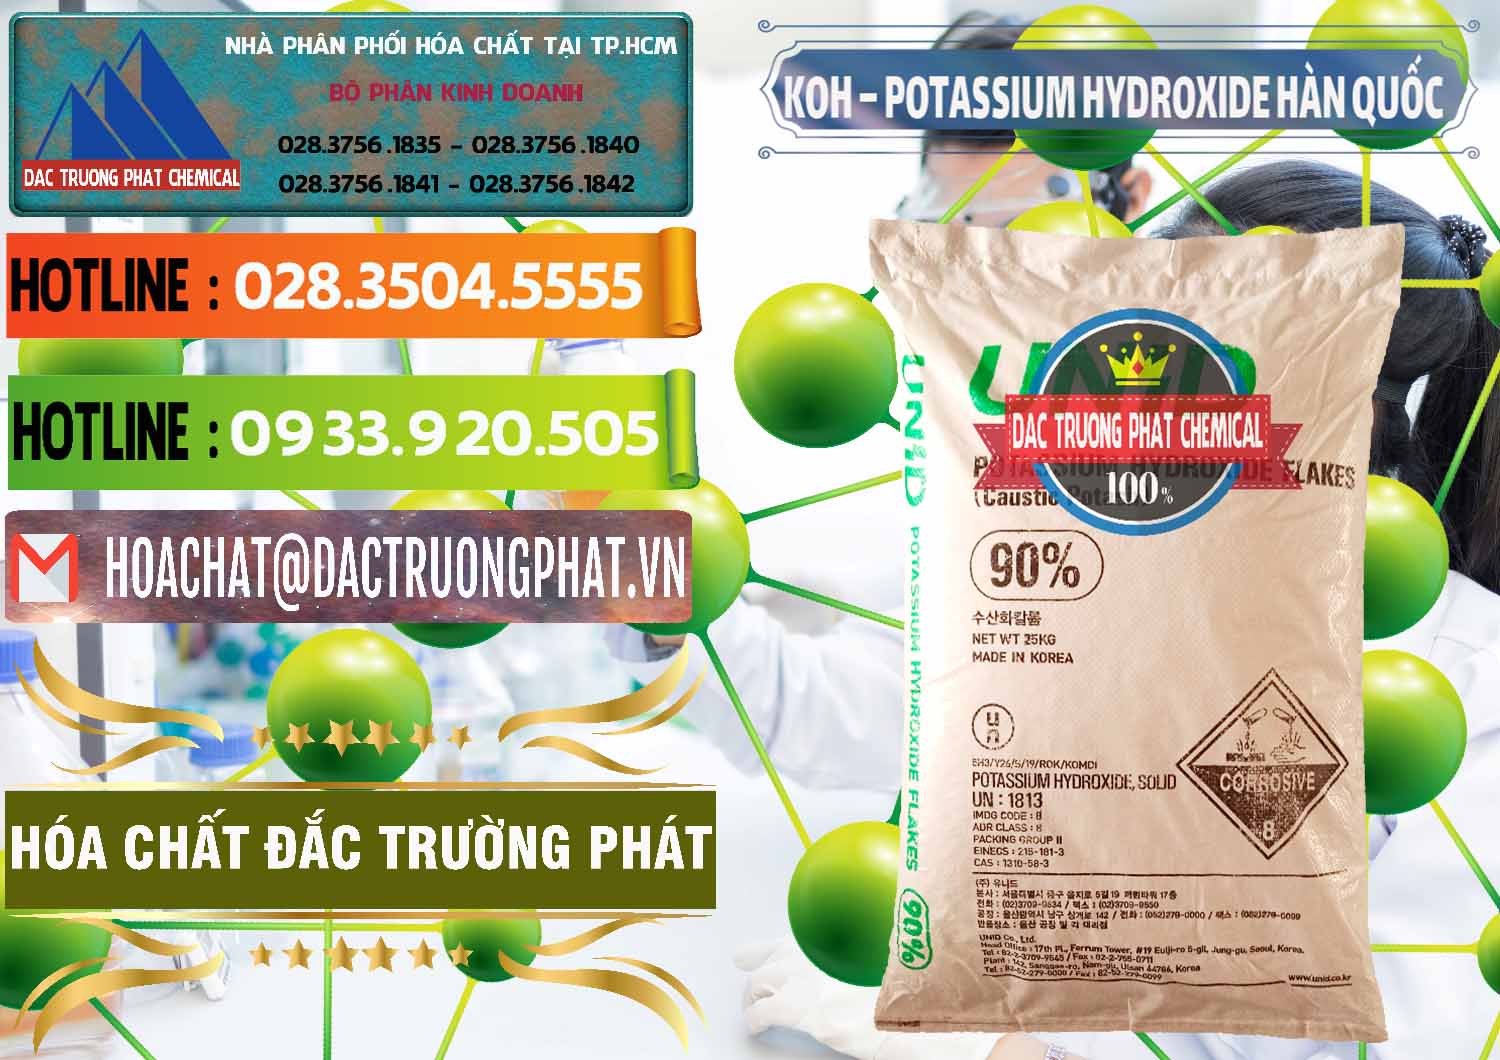 Nơi chuyên bán & phân phối KOH ( 90%) – Potassium Hydroxide Unid Hàn Quốc Korea - 0090 - Nơi chuyên phân phối ( nhập khẩu ) hóa chất tại TP.HCM - cungcaphoachat.com.vn